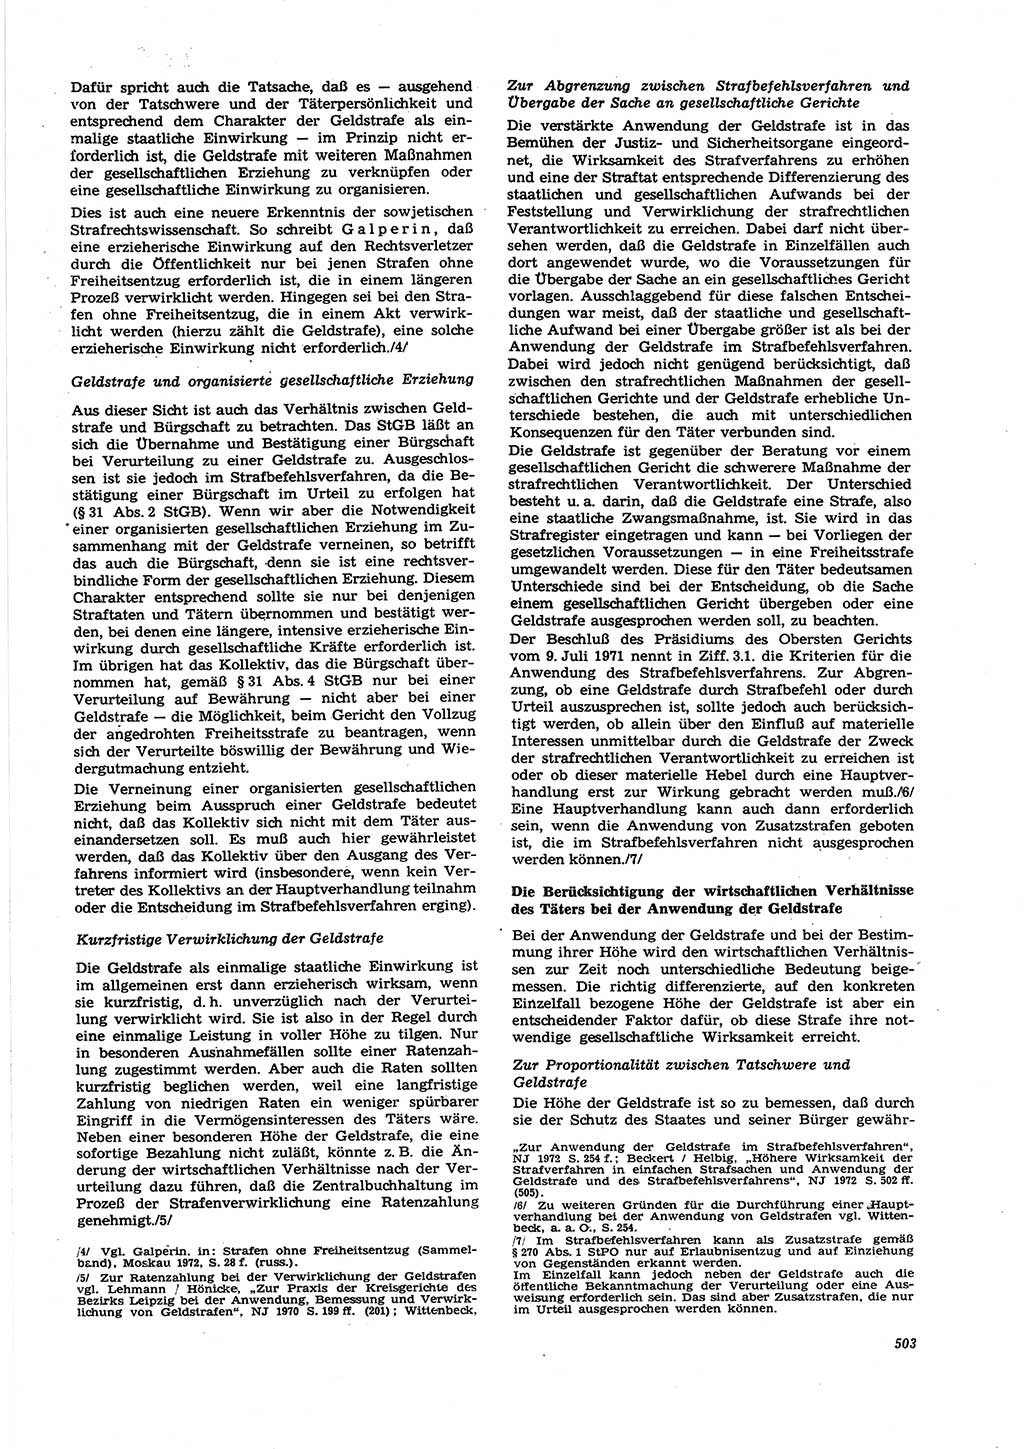 Neue Justiz (NJ), Zeitschrift für Recht und Rechtswissenschaft [Deutsche Demokratische Republik (DDR)], 27. Jahrgang 1973, Seite 503 (NJ DDR 1973, S. 503)